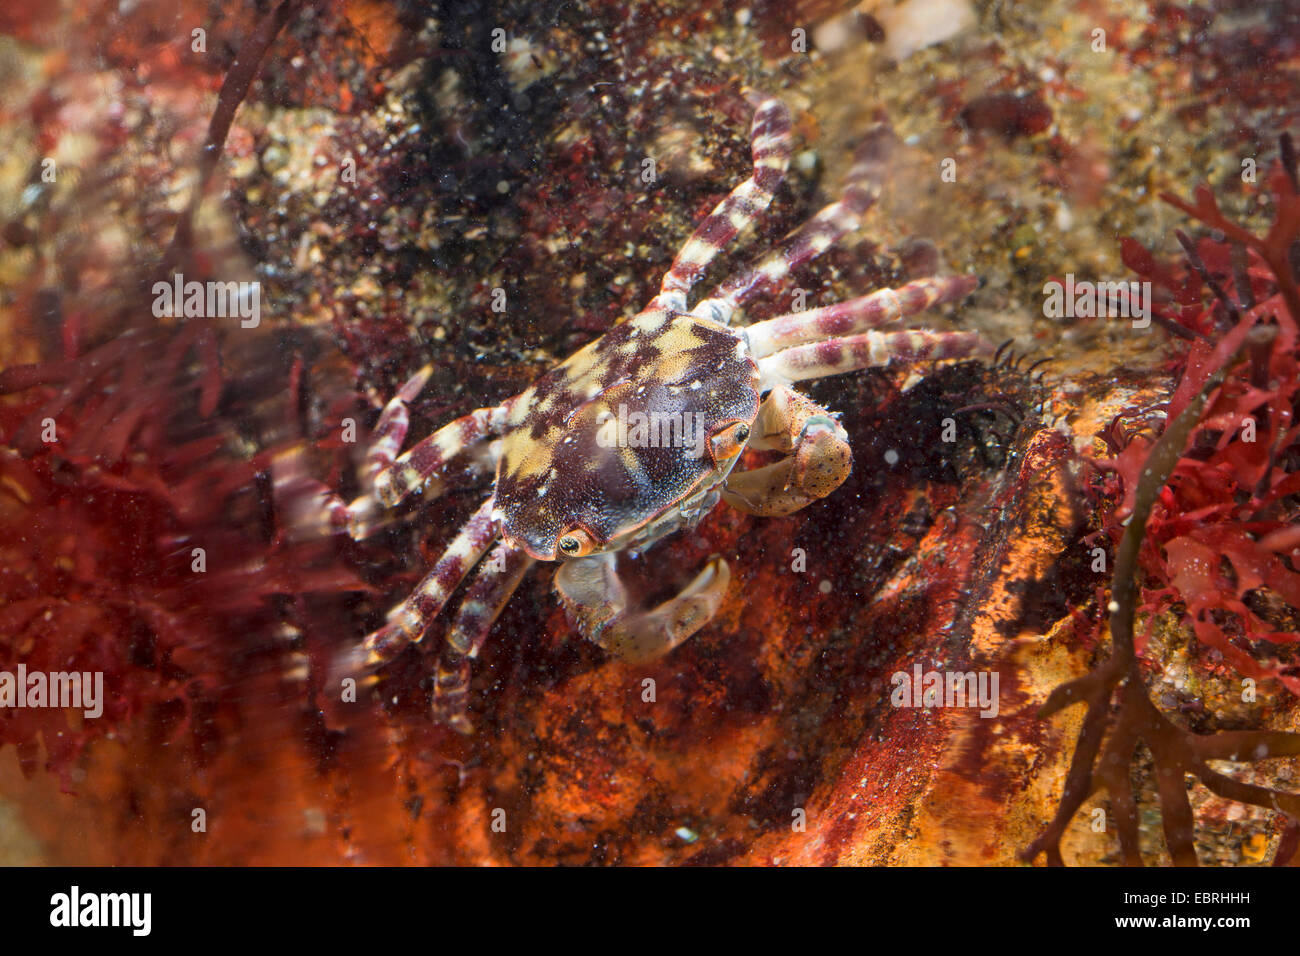 Japanese shore crab, Asian shore crab, Pacific crab (Hemigrapsus sanguineus, Grapsus sanguineus, Heterograpsus maculatus), Germany Stock Photo